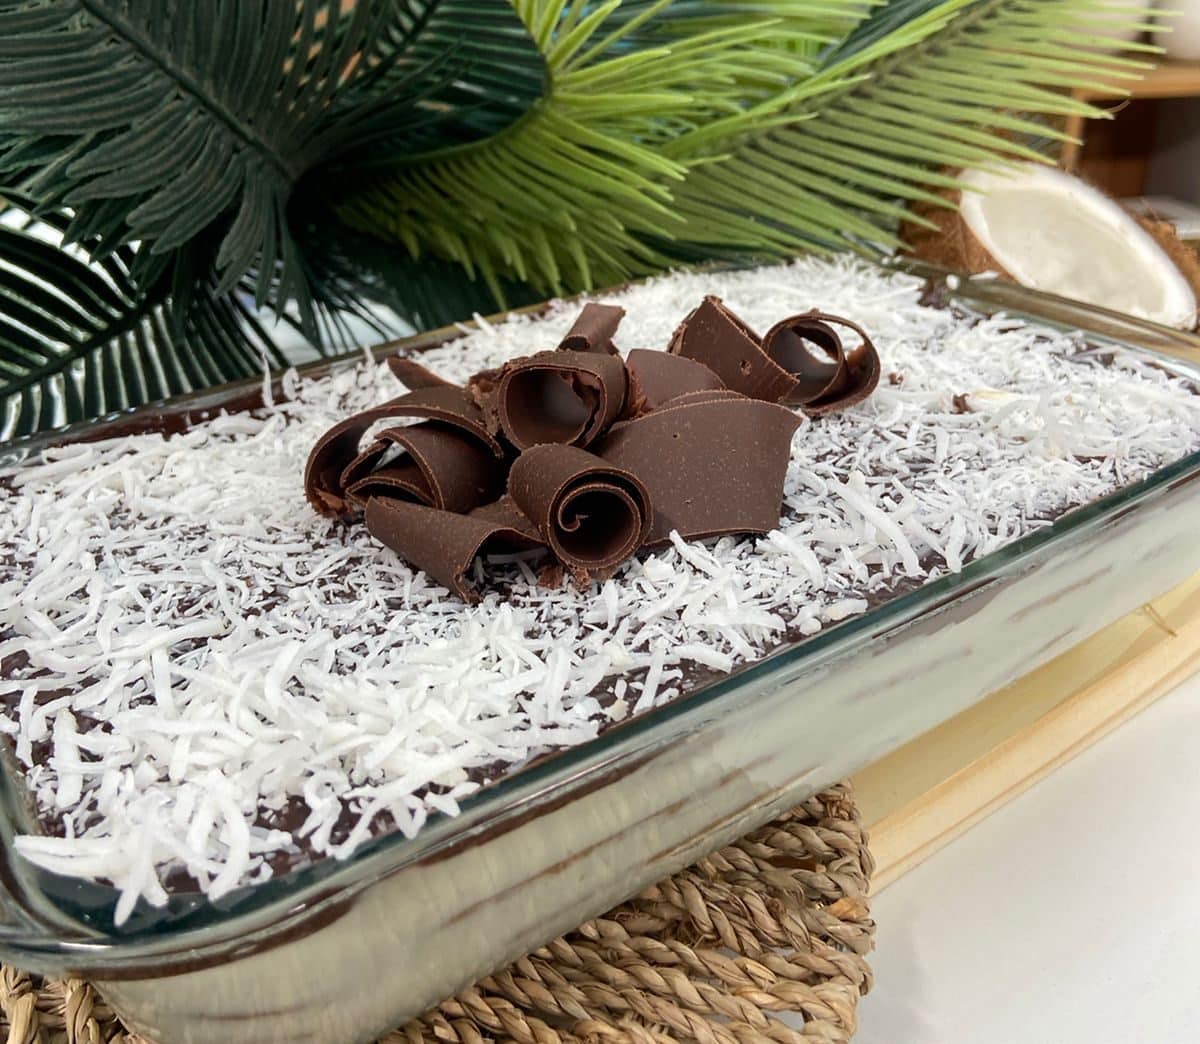 Aprenda a preparar um delicioso pavê de coco com chocolate - Espaço Gourmet